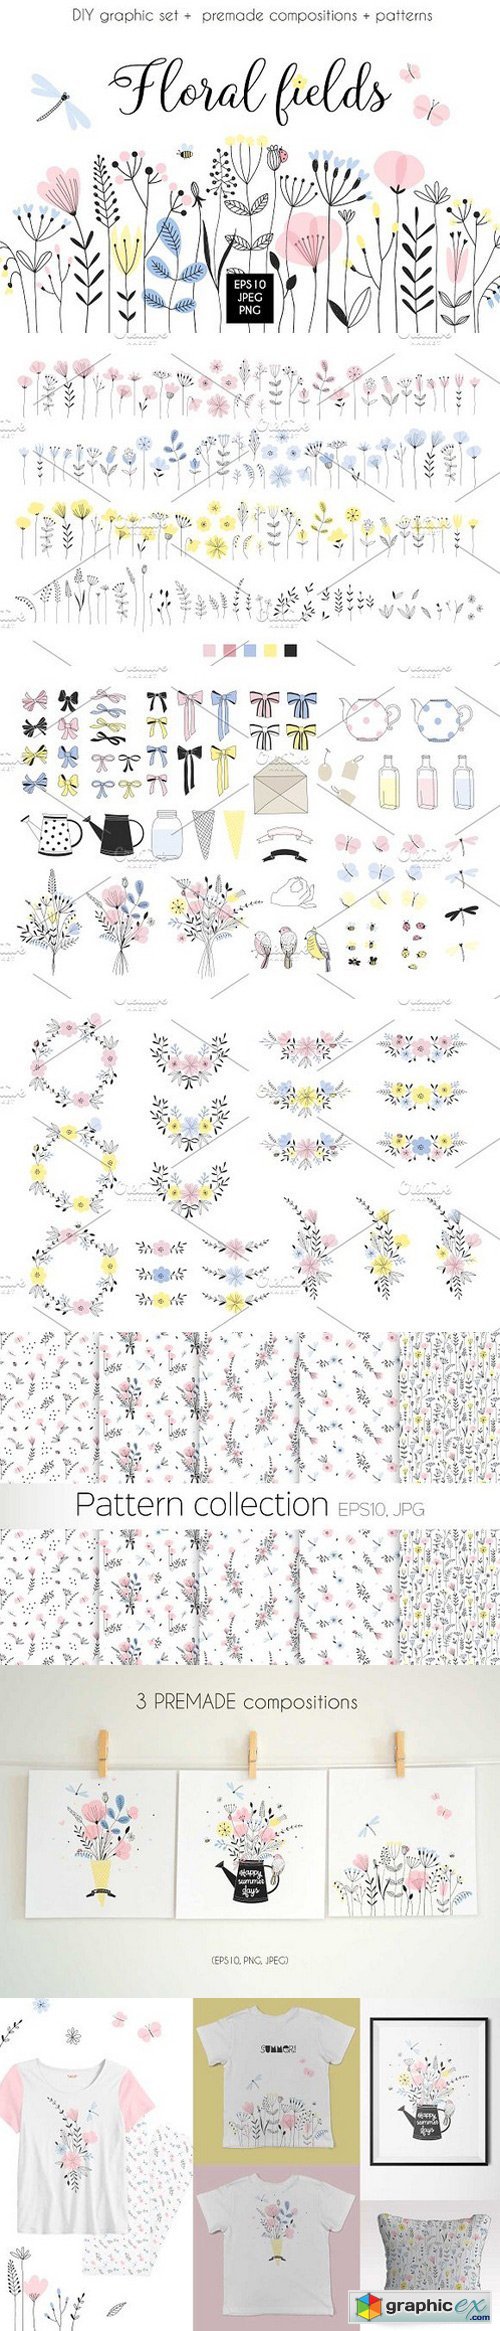 Graphic floral bundle